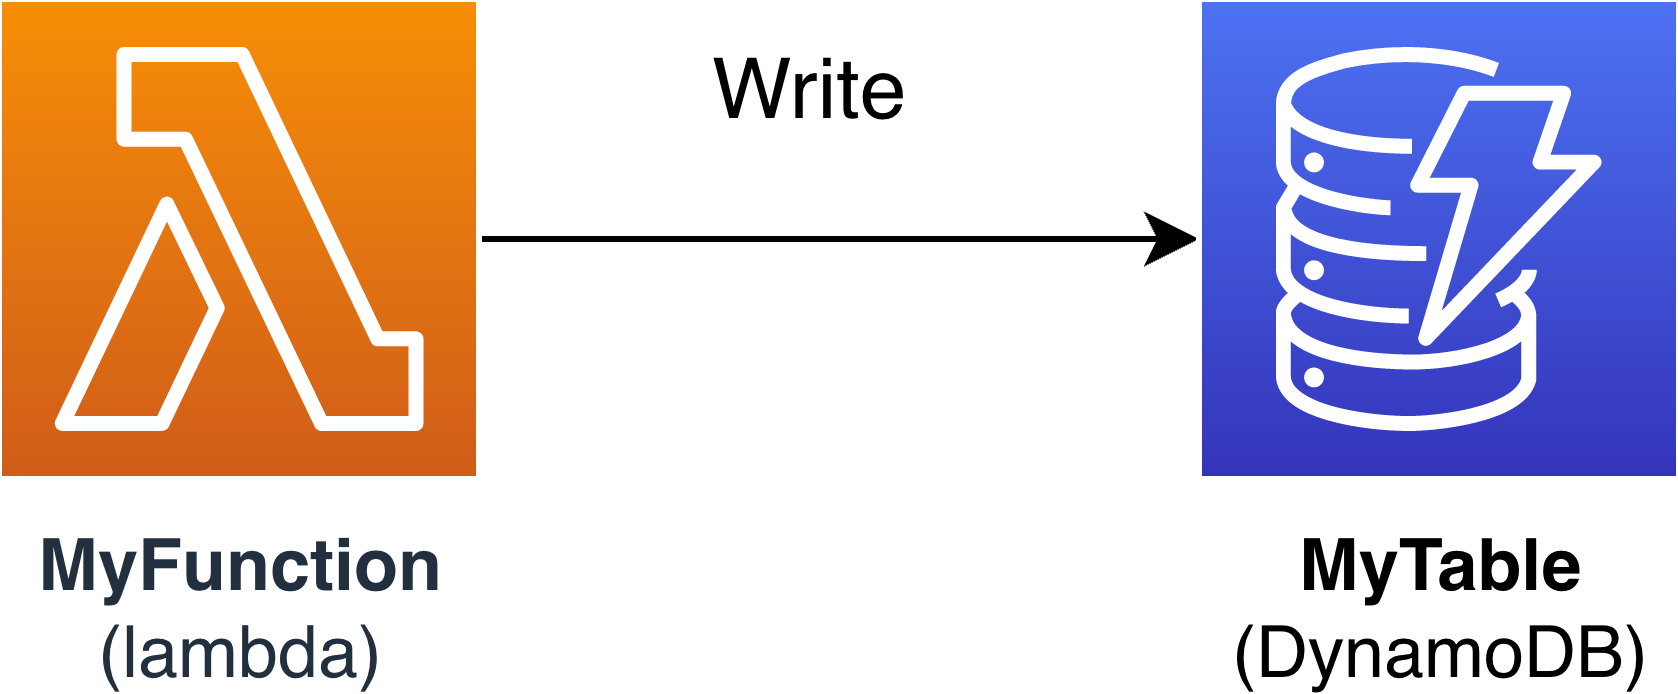 Lambda 函数使用 Amazon SAM 连接器将数据写入 DynamoDB 表的示意图。